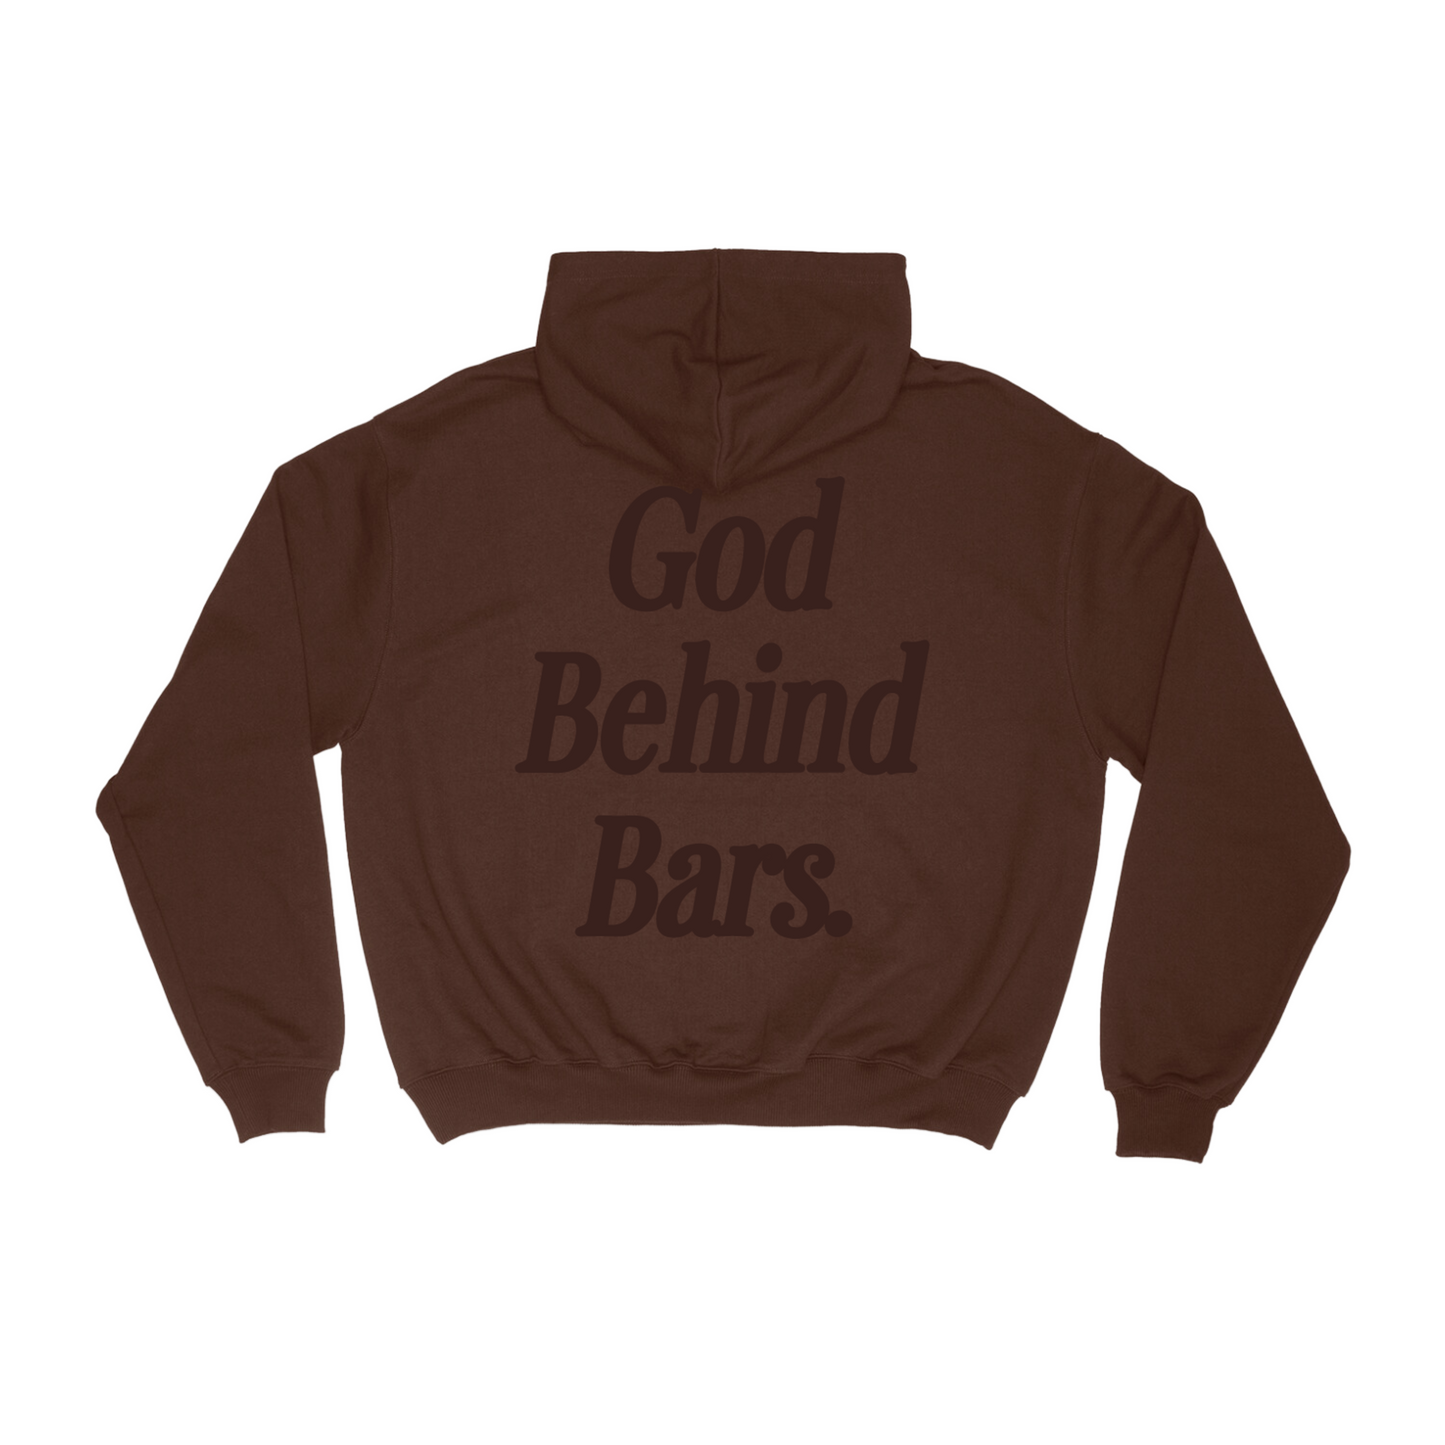 'God Behind Bars' Brown Hoodie